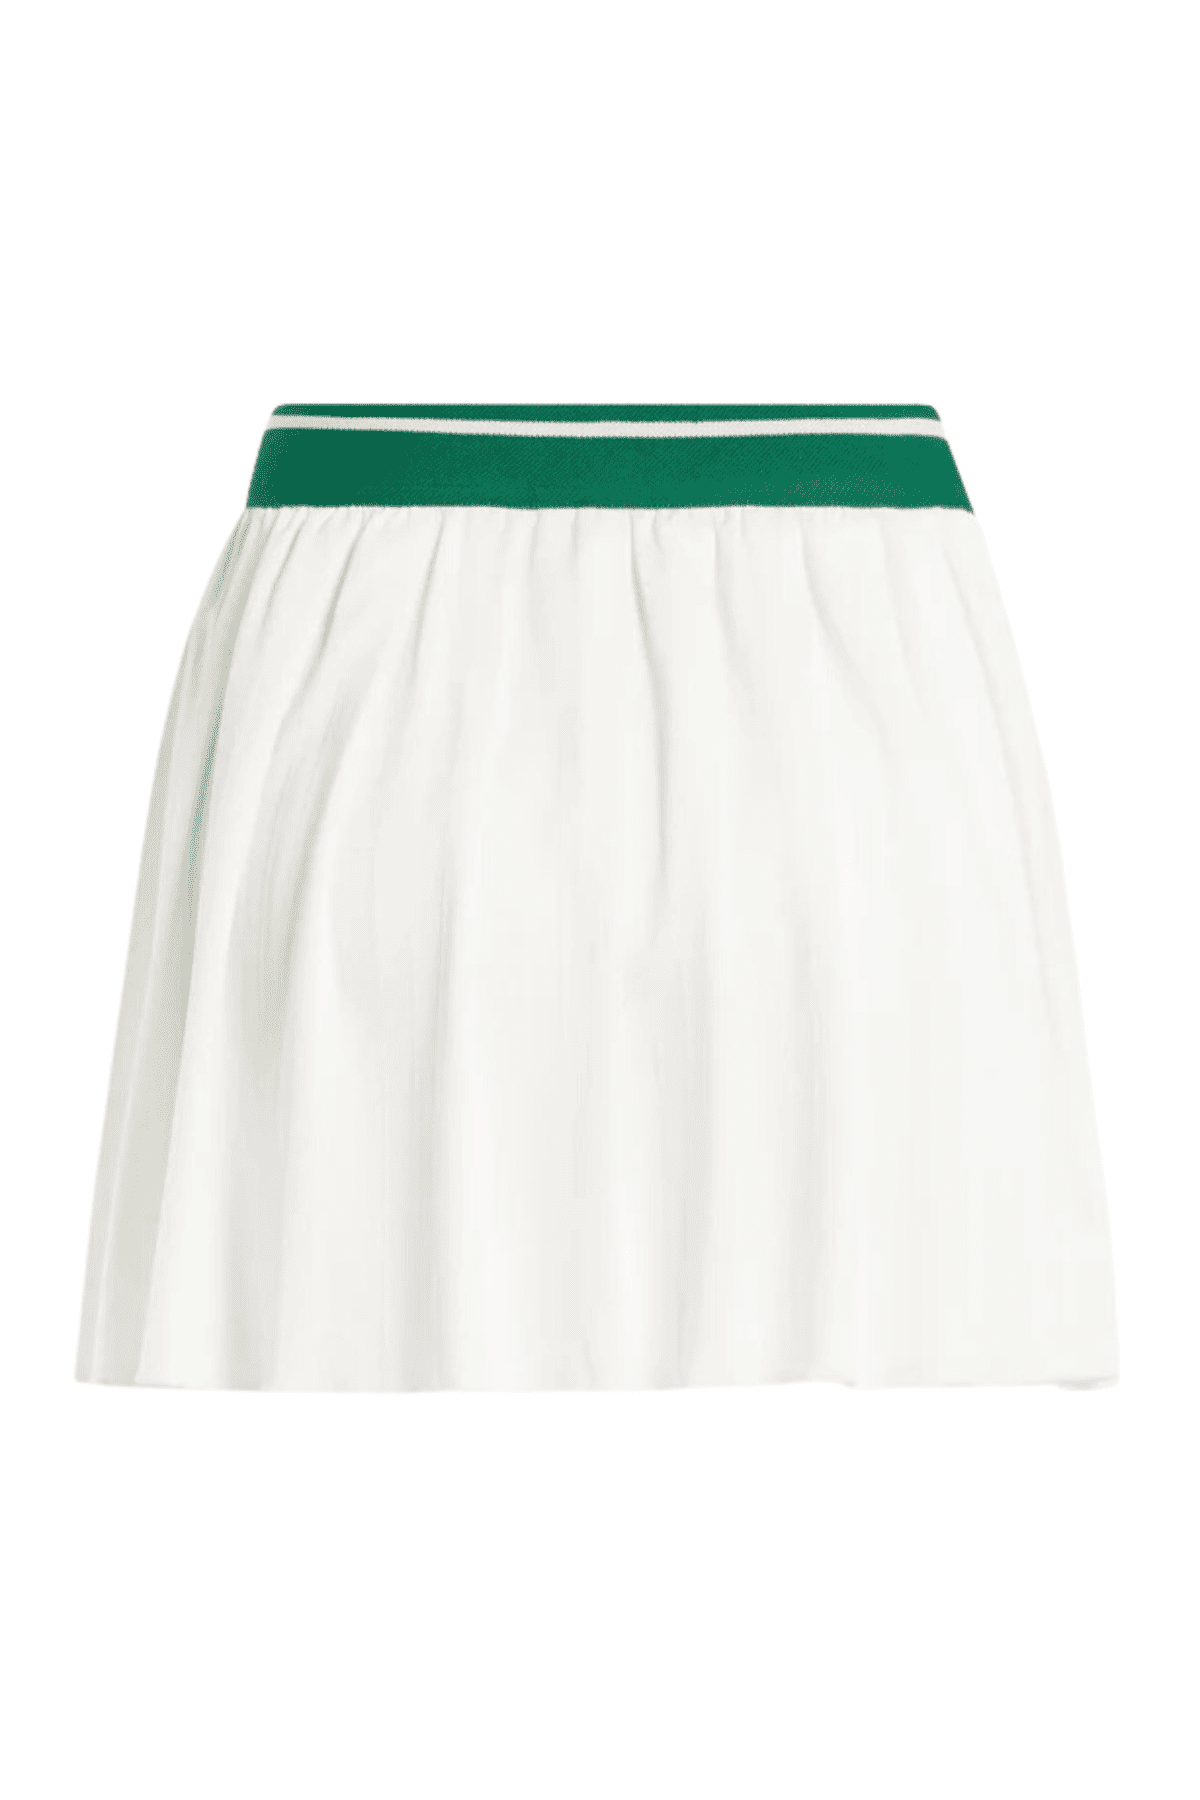 חצאית טניס עם מכנסון לנשים Reebok Cl Q2 Cs מבית המותג ריבוק צבע לבן ירוק-Reebok-2XS-נאקו